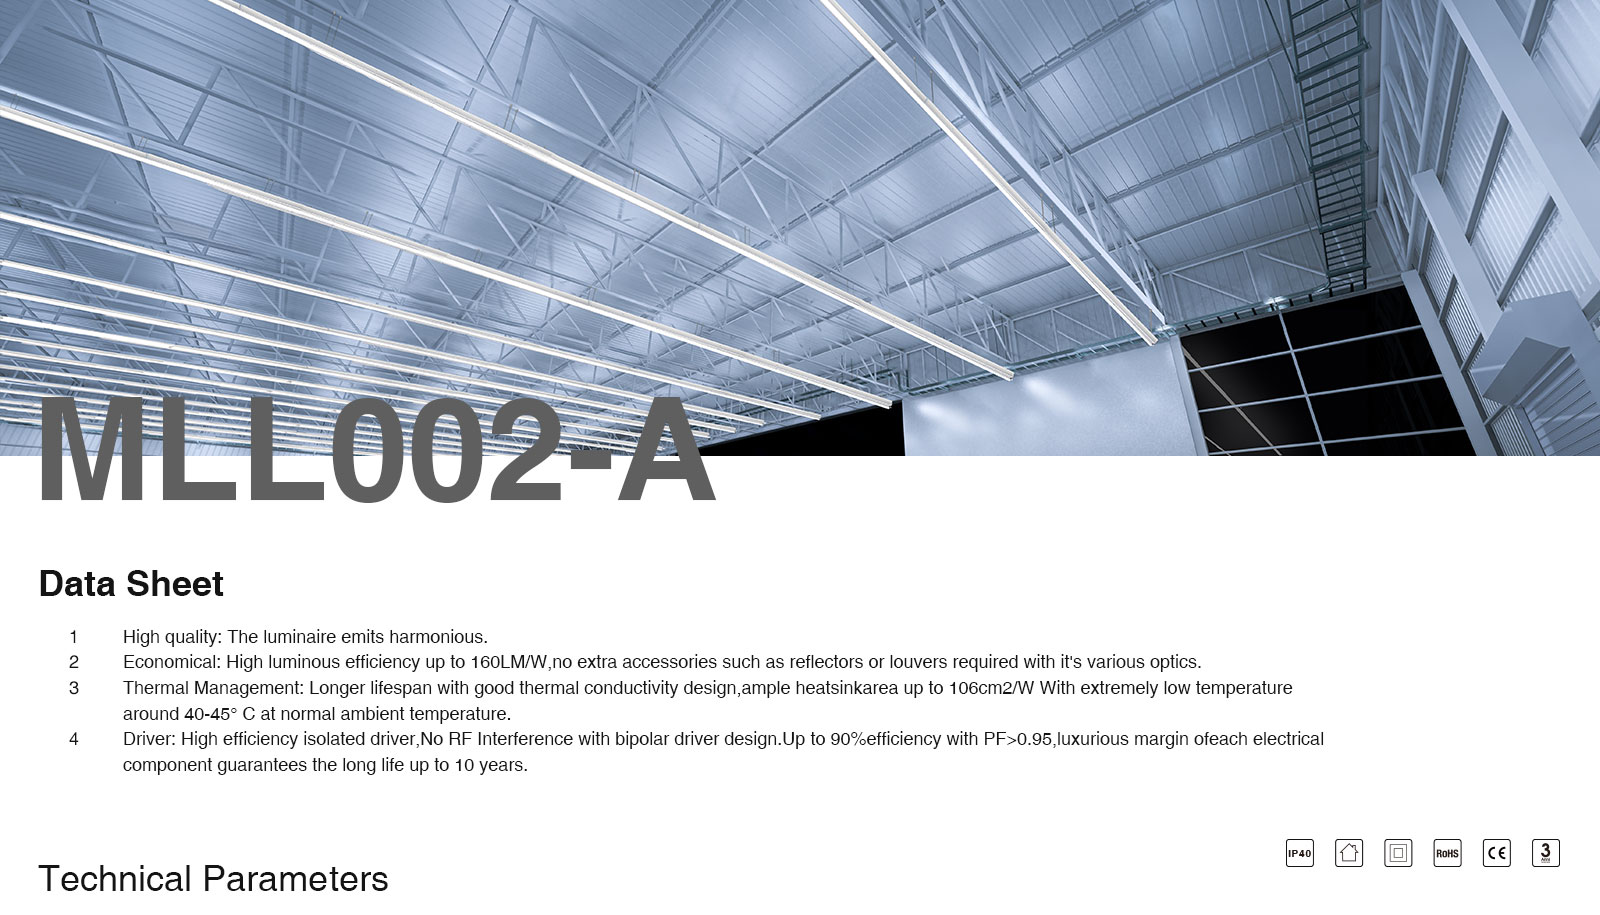 MLL002-A Canalina a 5 fili per luci lineari a LED 5 anni di garanzia-Luci lineari--ML00201